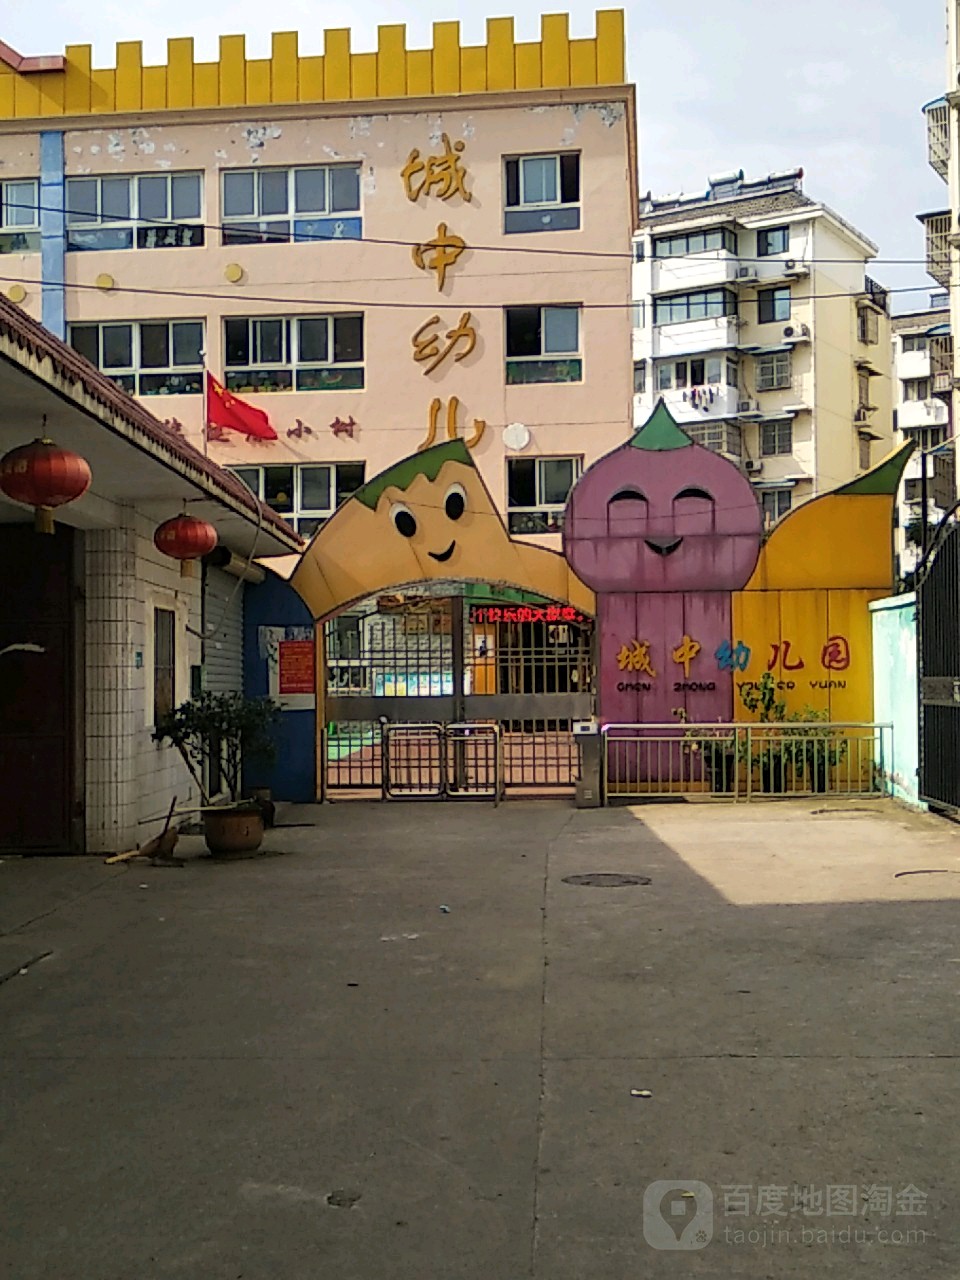 城中幼儿园(庆安街)的图片